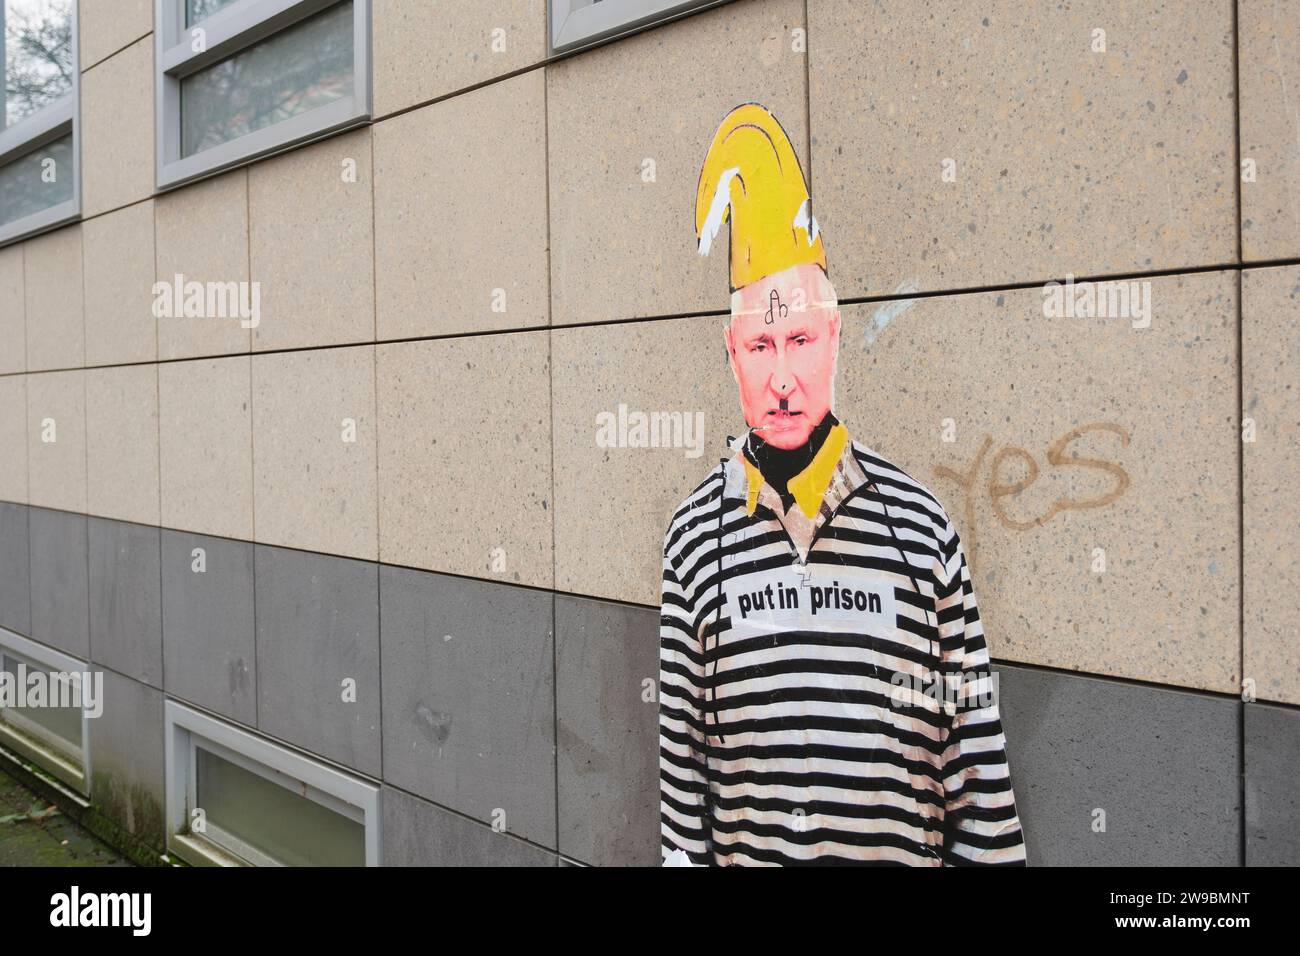 L’artiste Thomas Baumgärtel a immortalisé Vladimir Poutine sur une affiche de protestation. Poutine porte des vêtements de bagnard. Banque D'Images